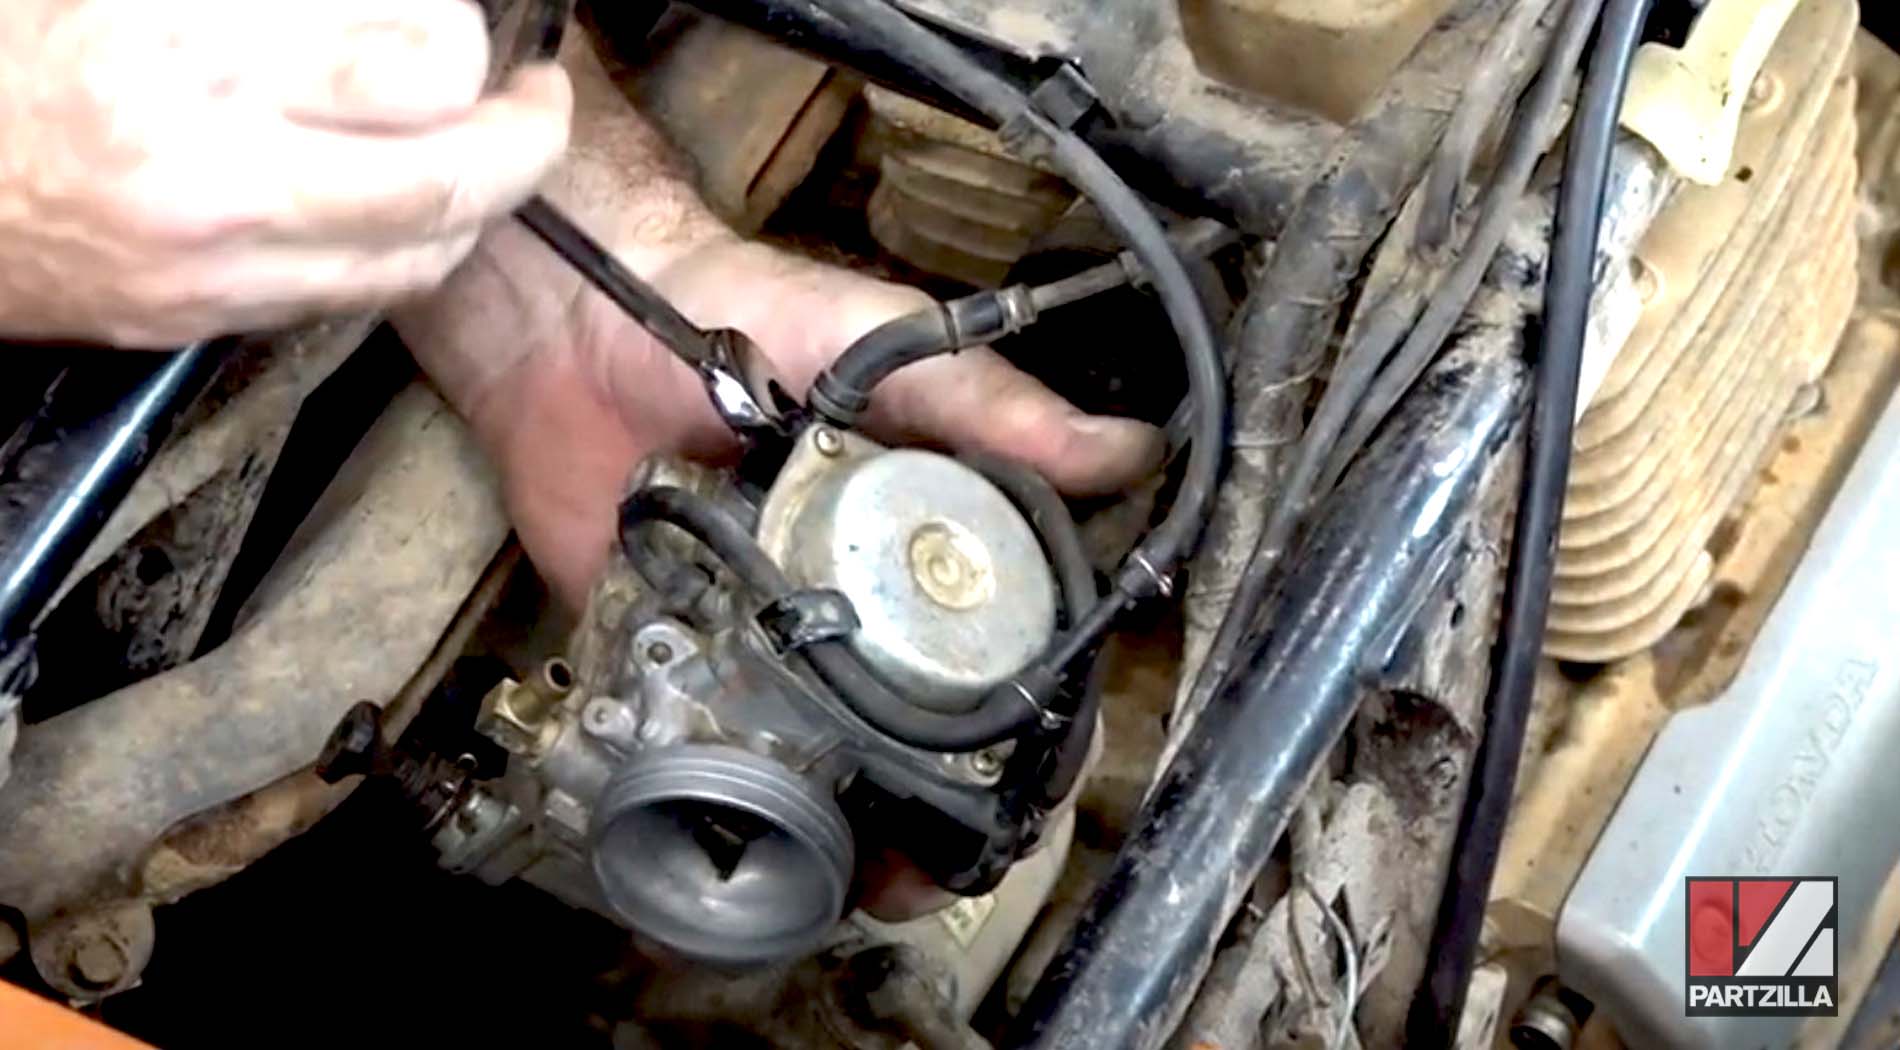 Honda Rancher TRX350 top end rebuild carburetor install